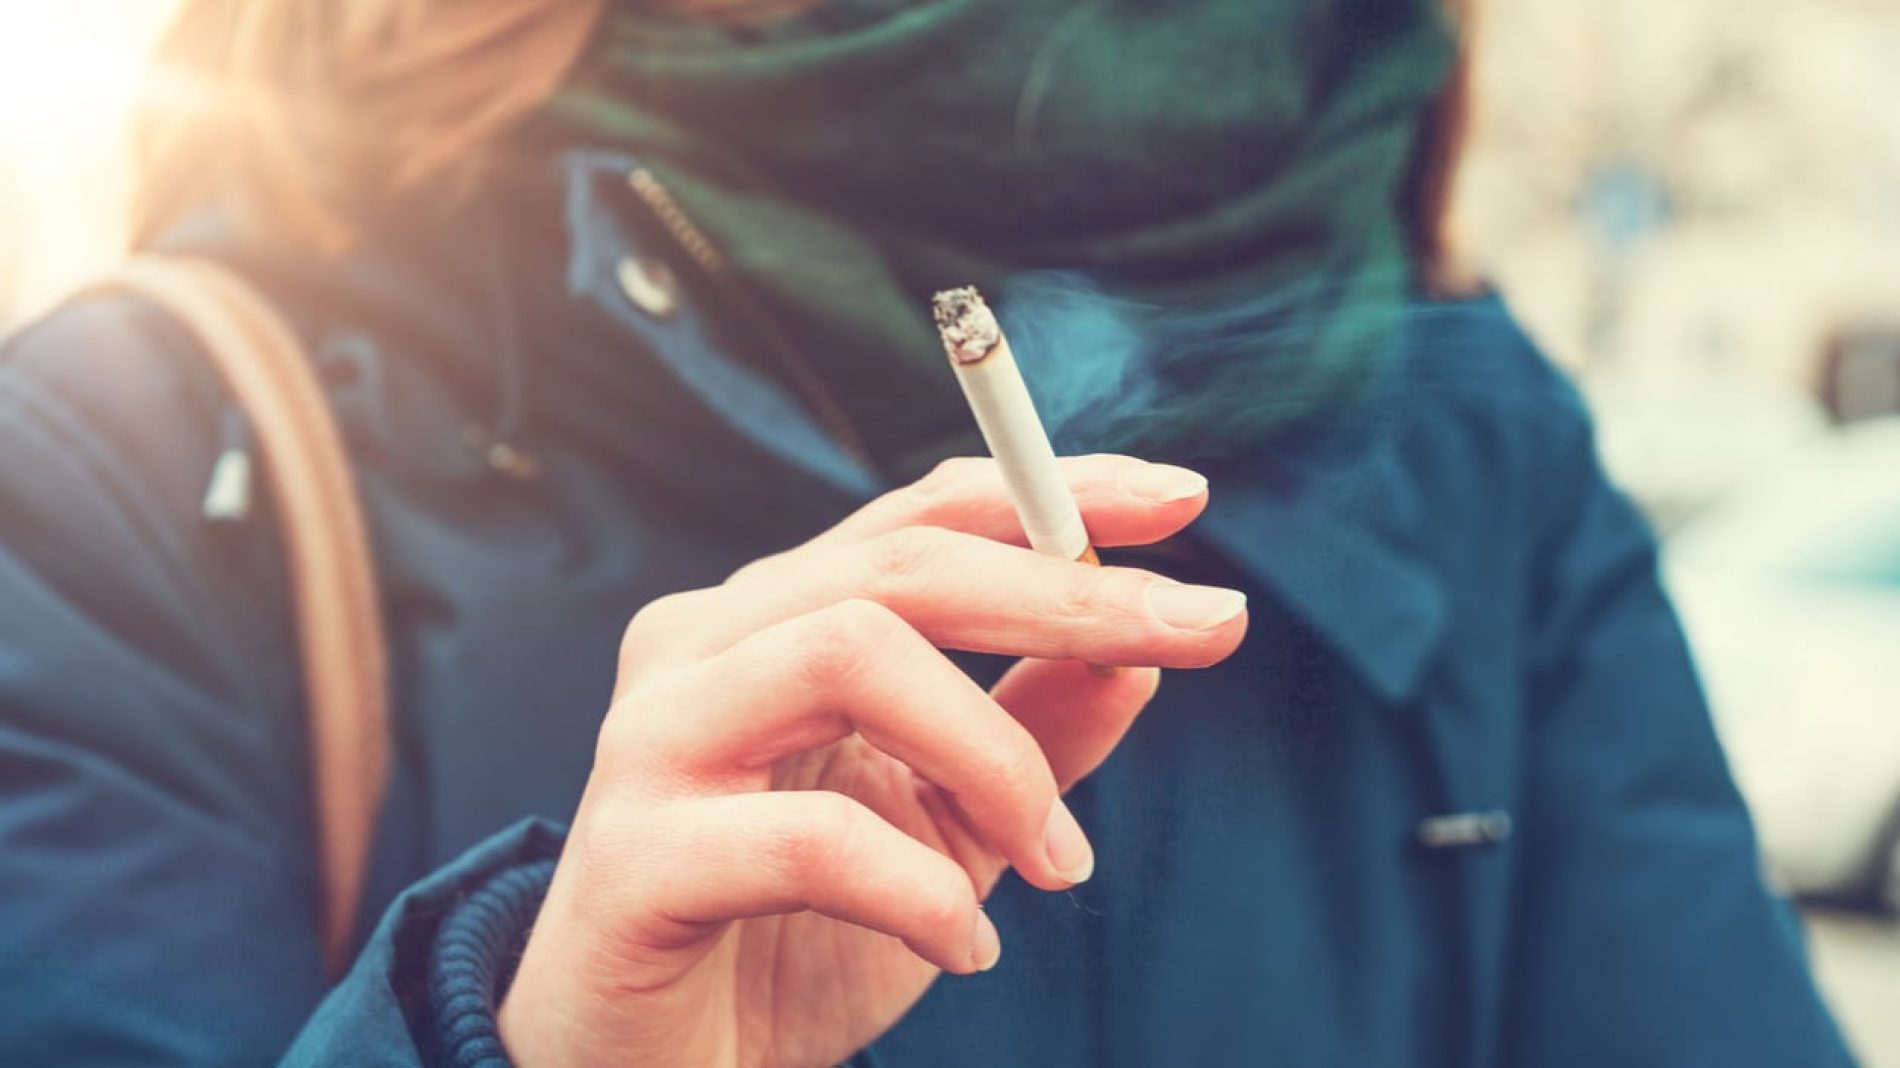 A woman holding a lit cigarette